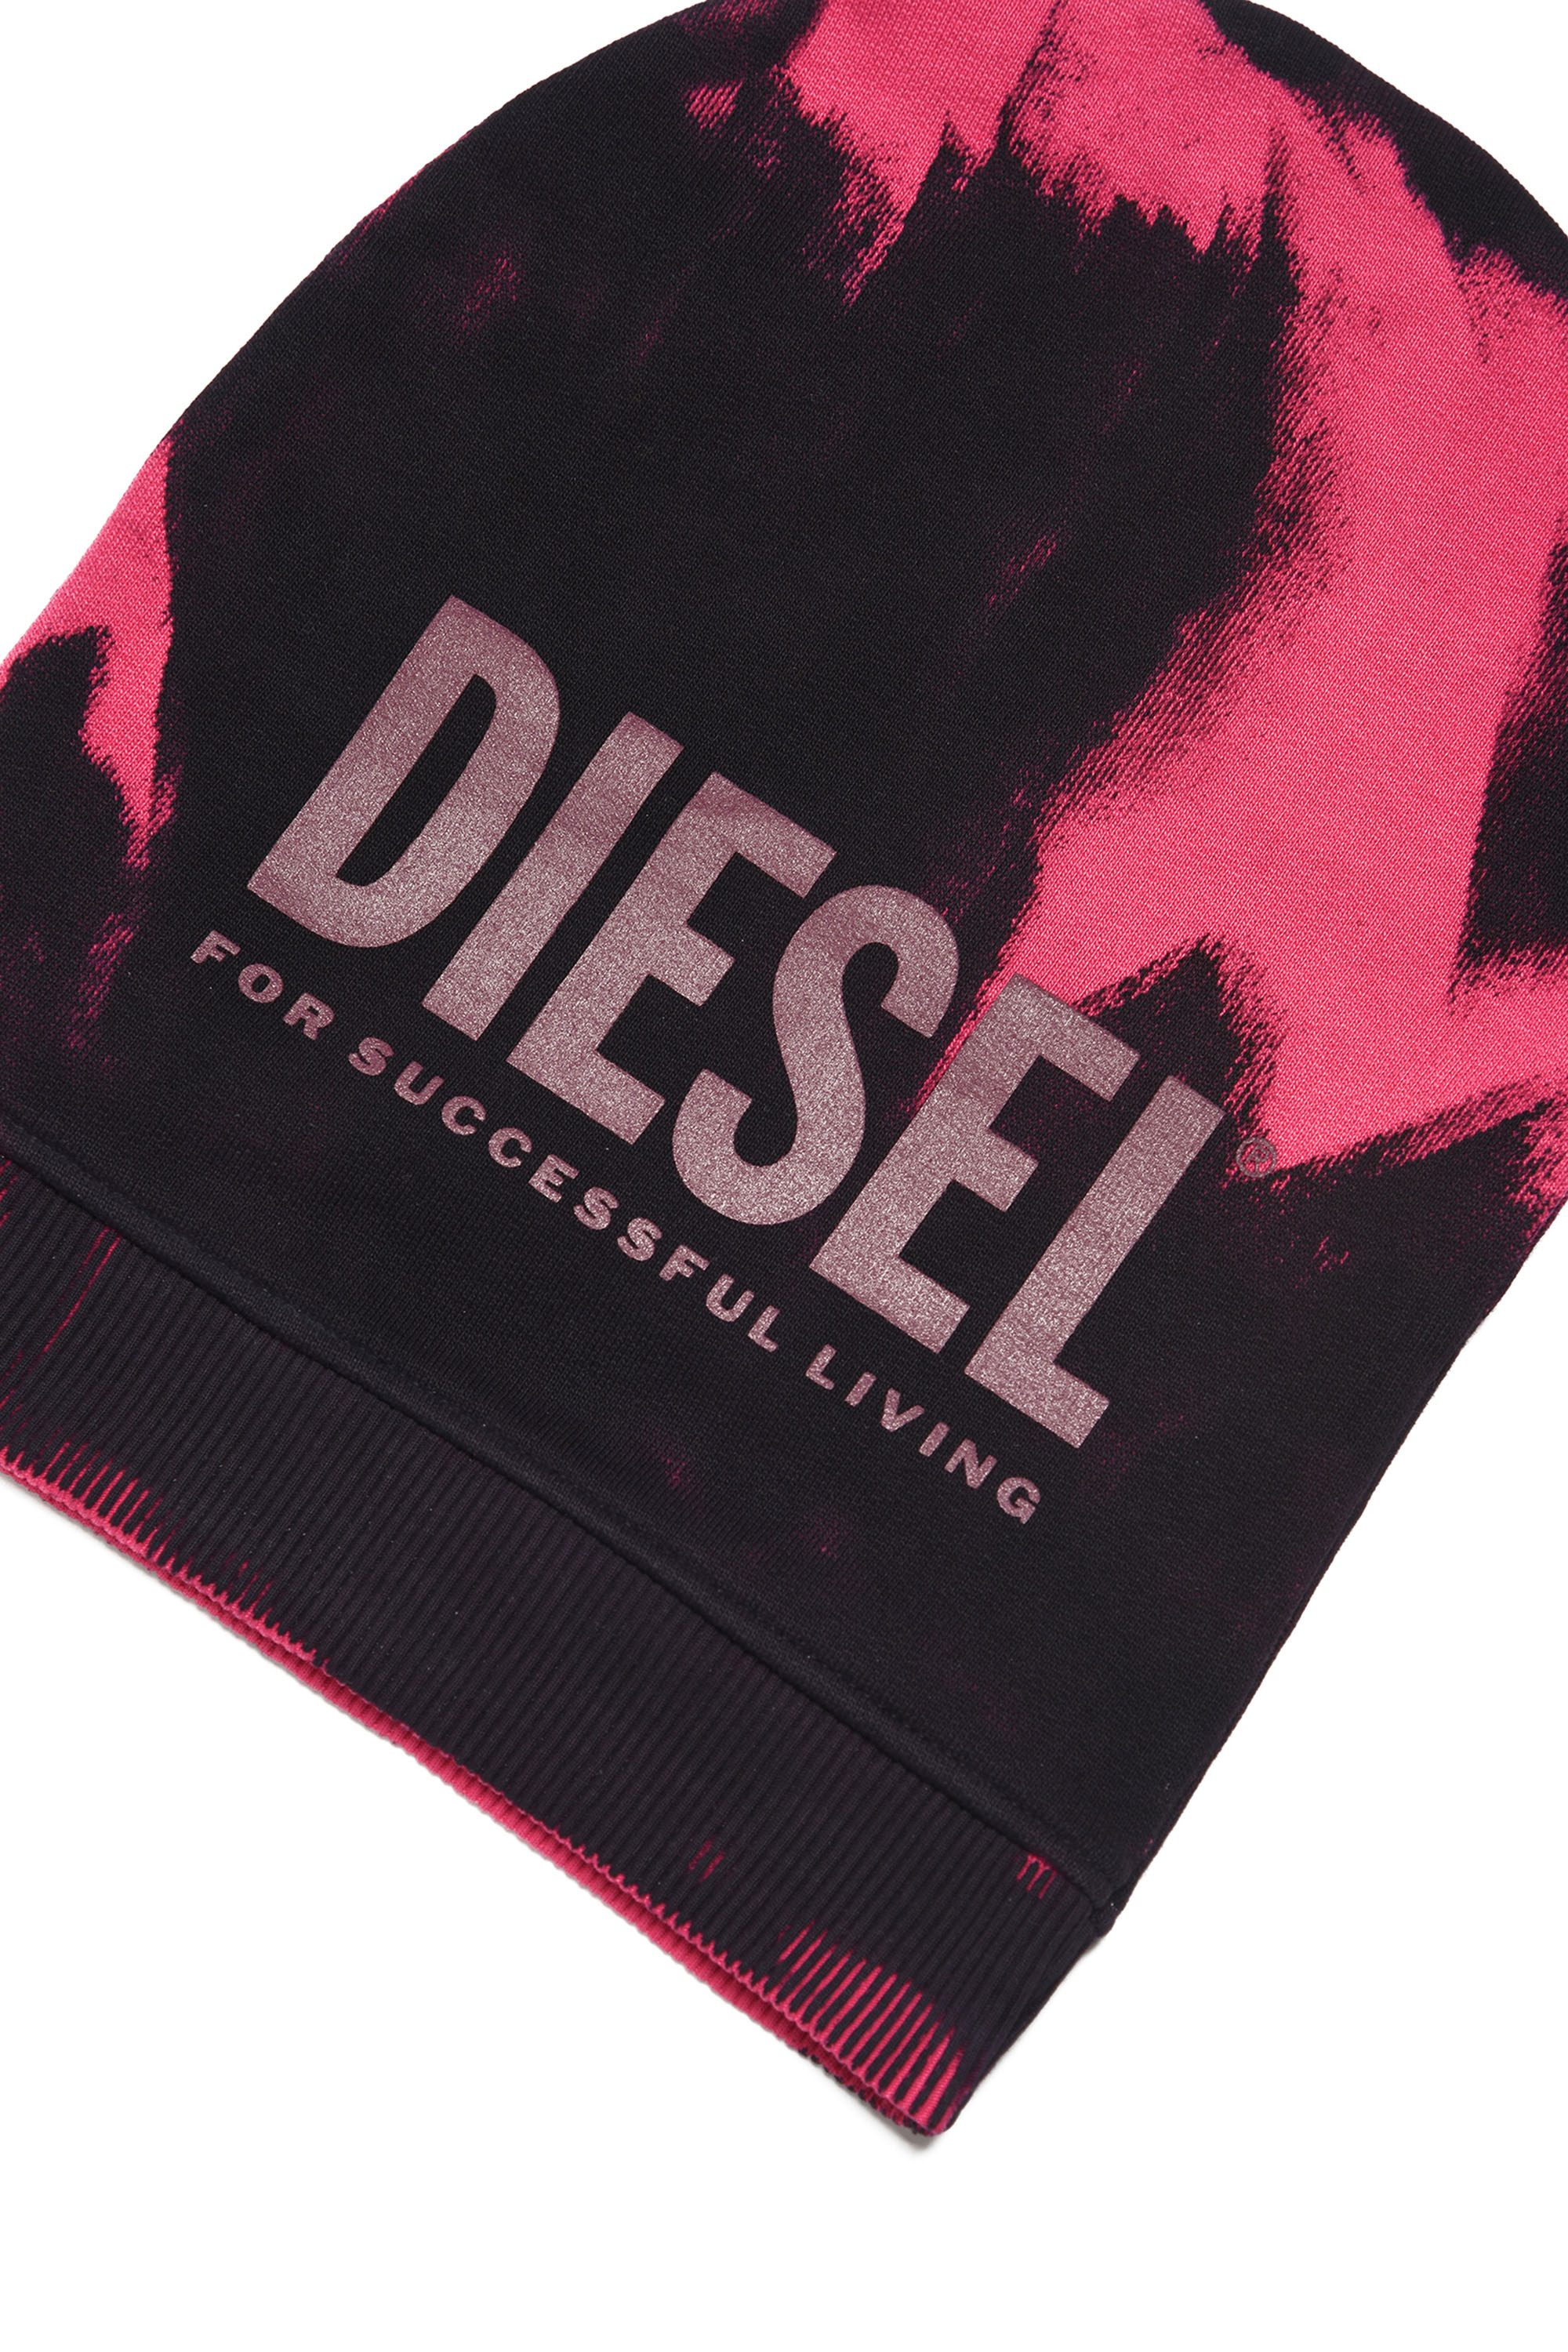 Diesel - FEDYM, Nero/Rosa - Image 3